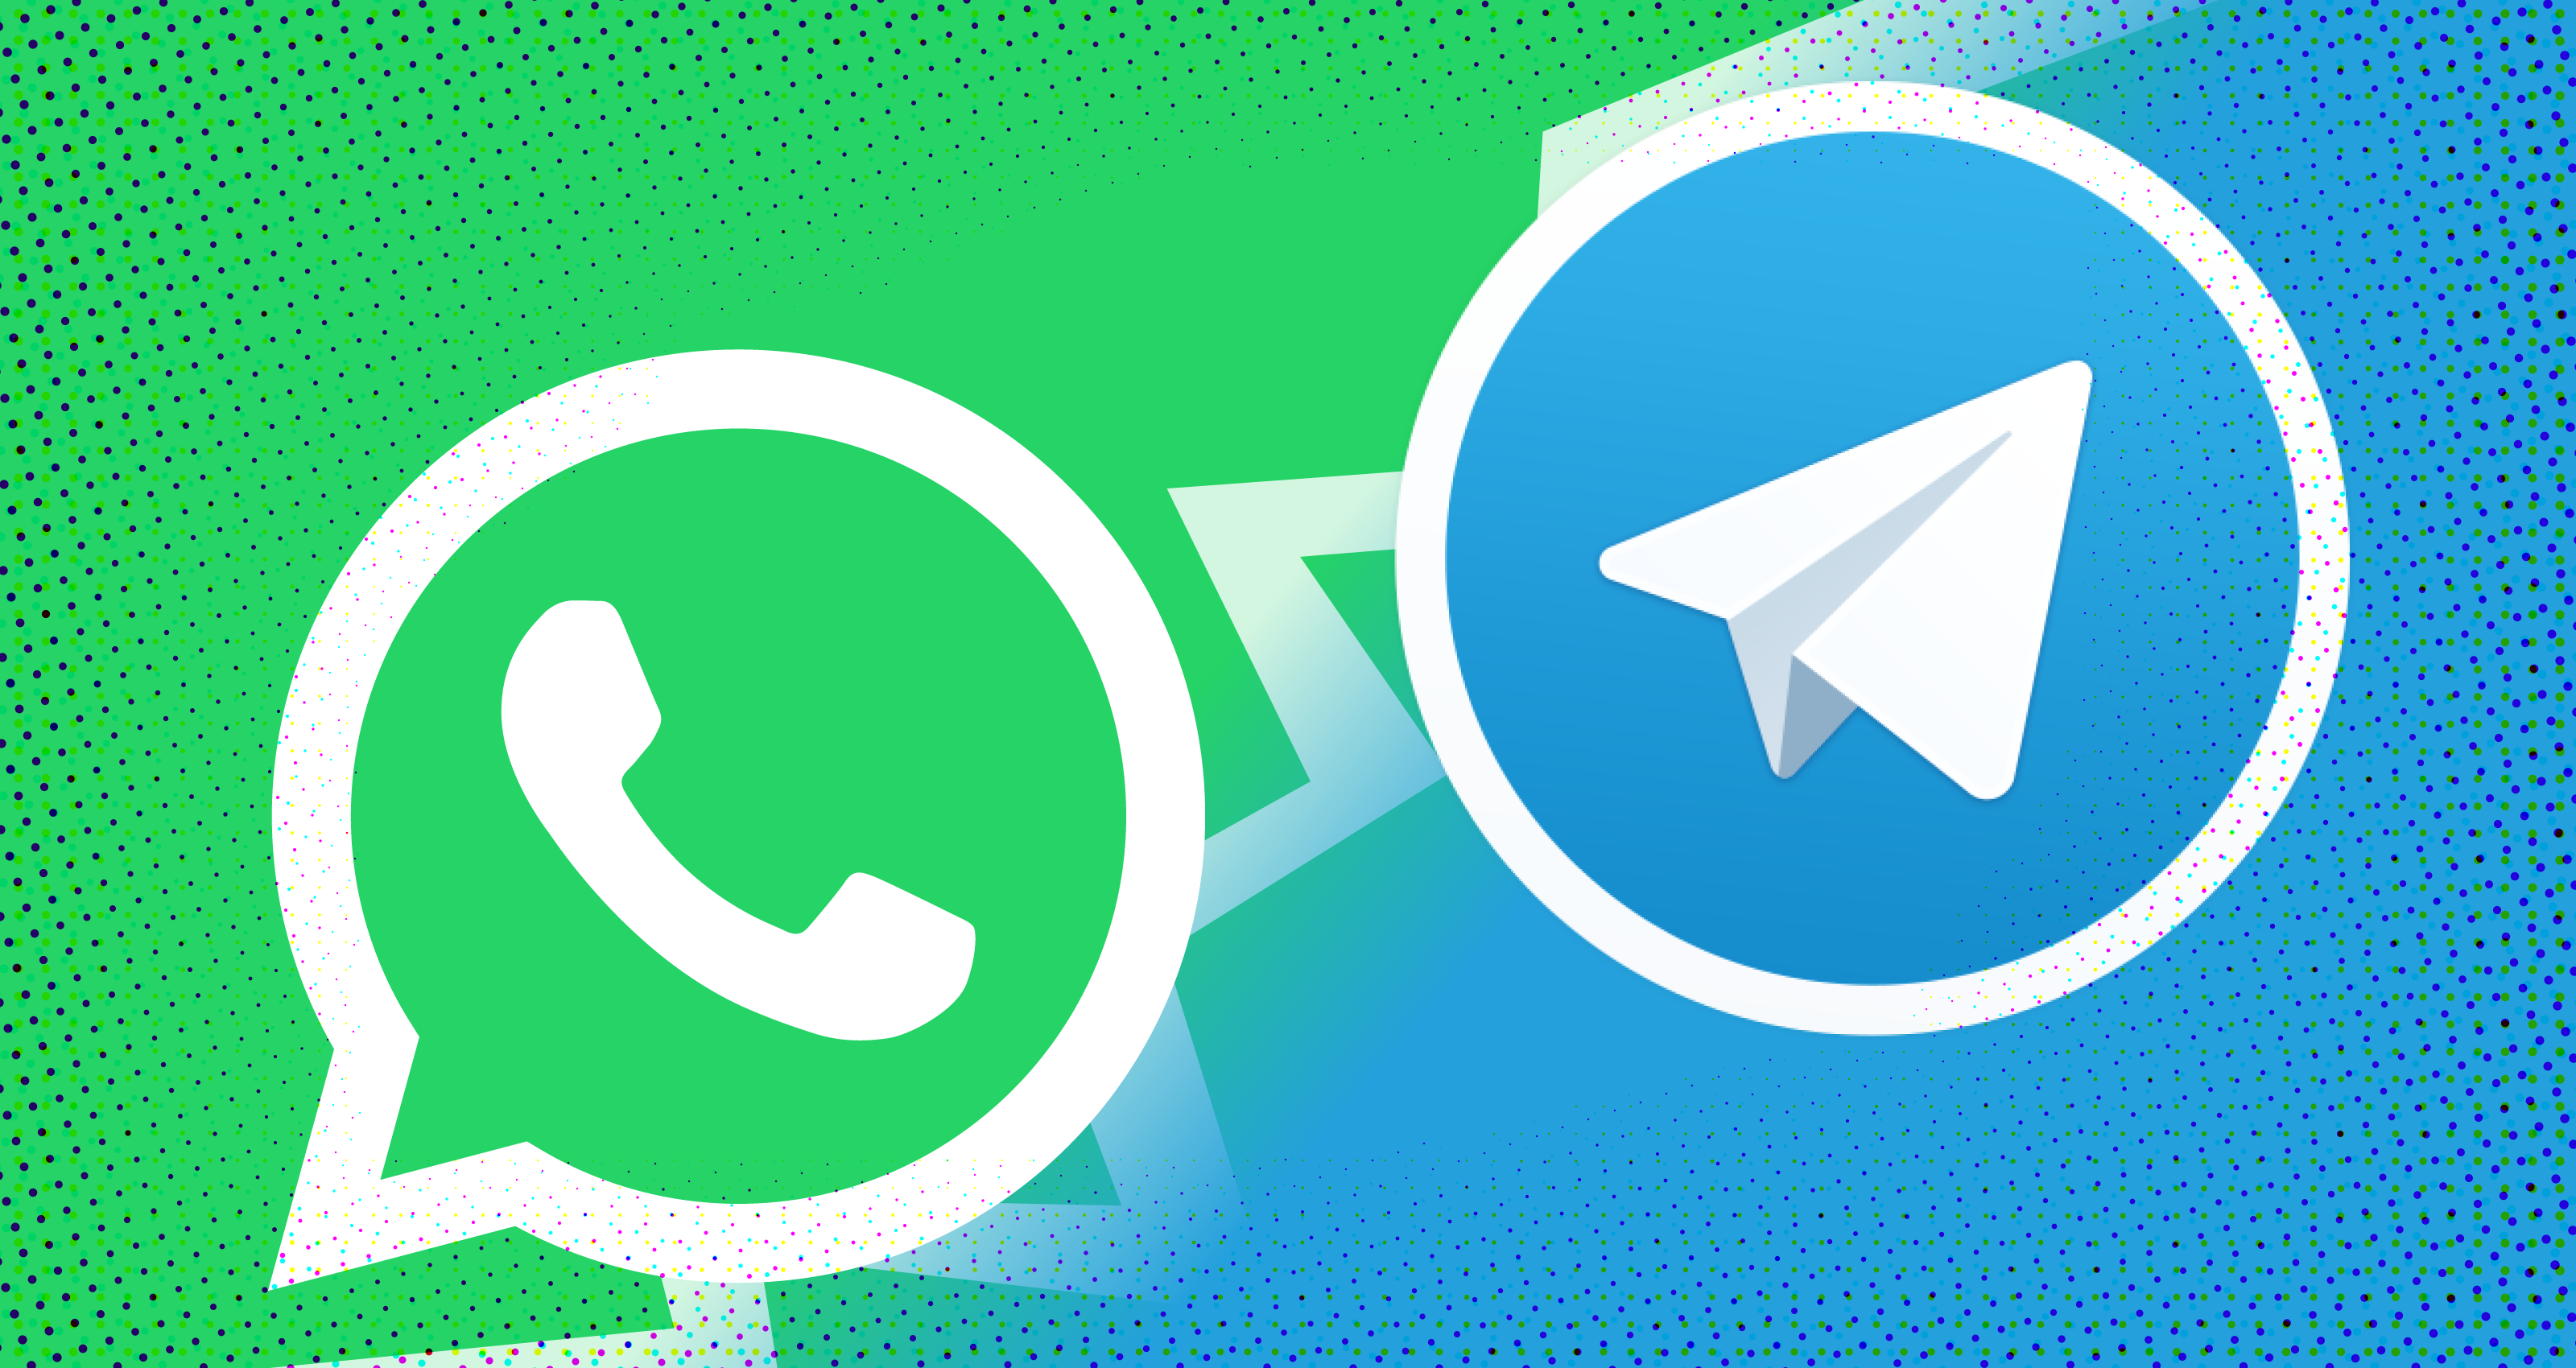 Փորձագետը բացահայտել է, թե ինչպես են Telegram-ն ու WhatsApp-ը լրտեսում օգտատերերին